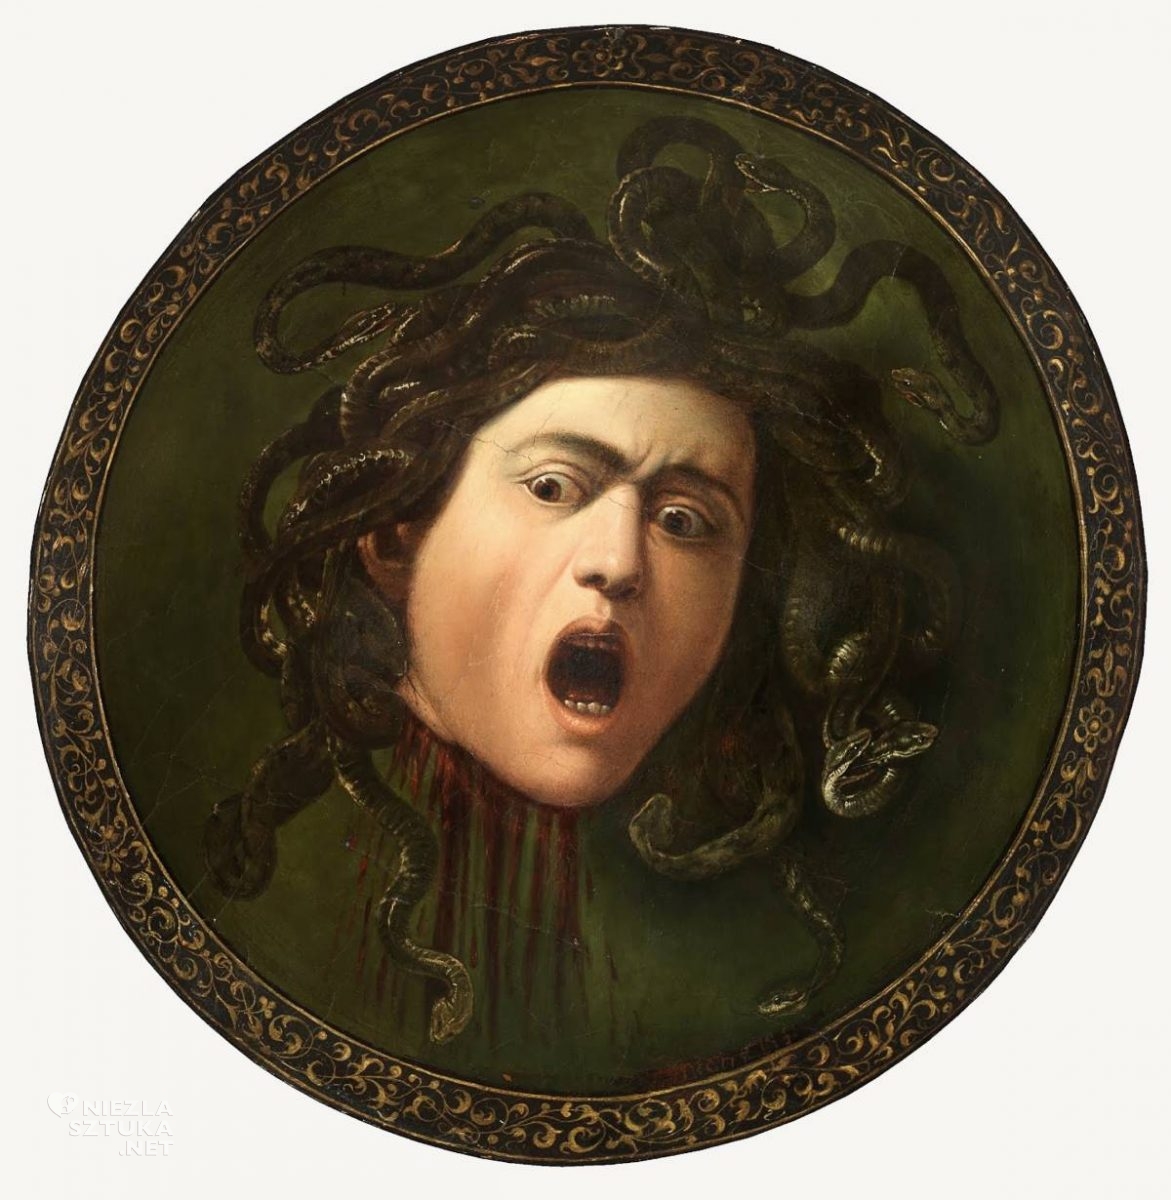 Caravaggio, Medusa Murtola, niezła sztuka